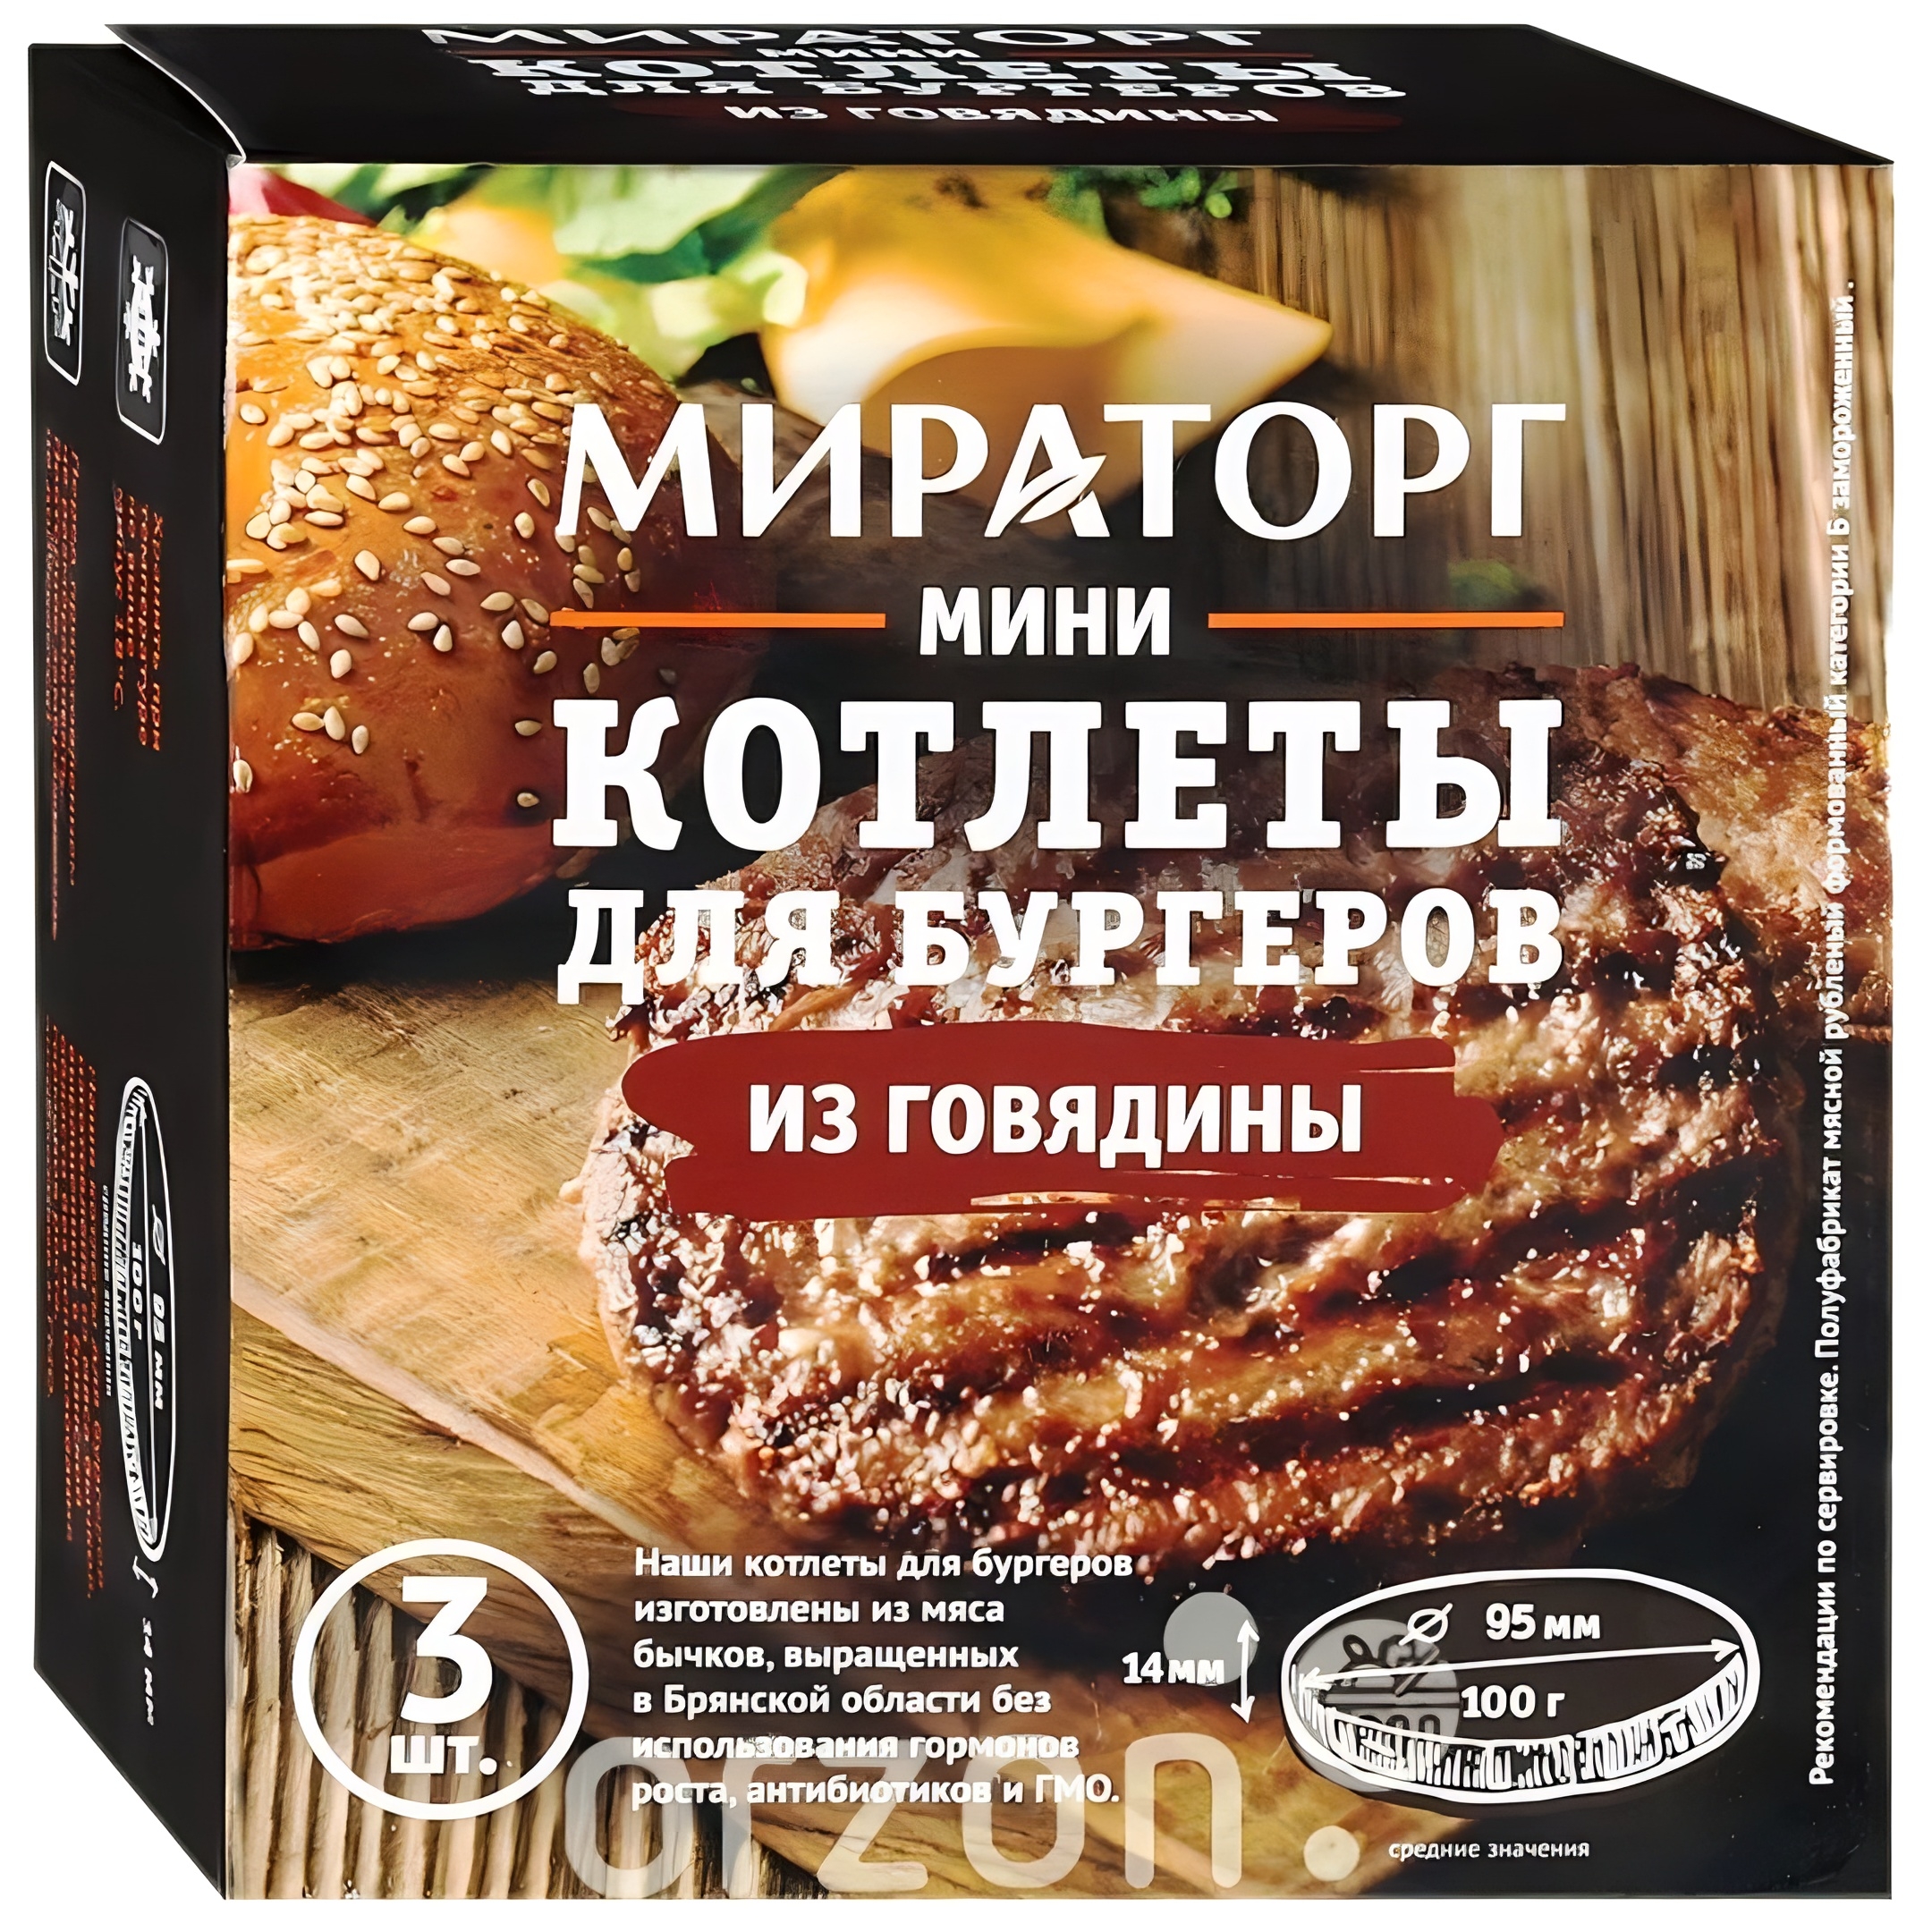 Мини Котлеты "Мираторг" Для бургеров из говядины (100 гр х 3 donaуки) 300 гр